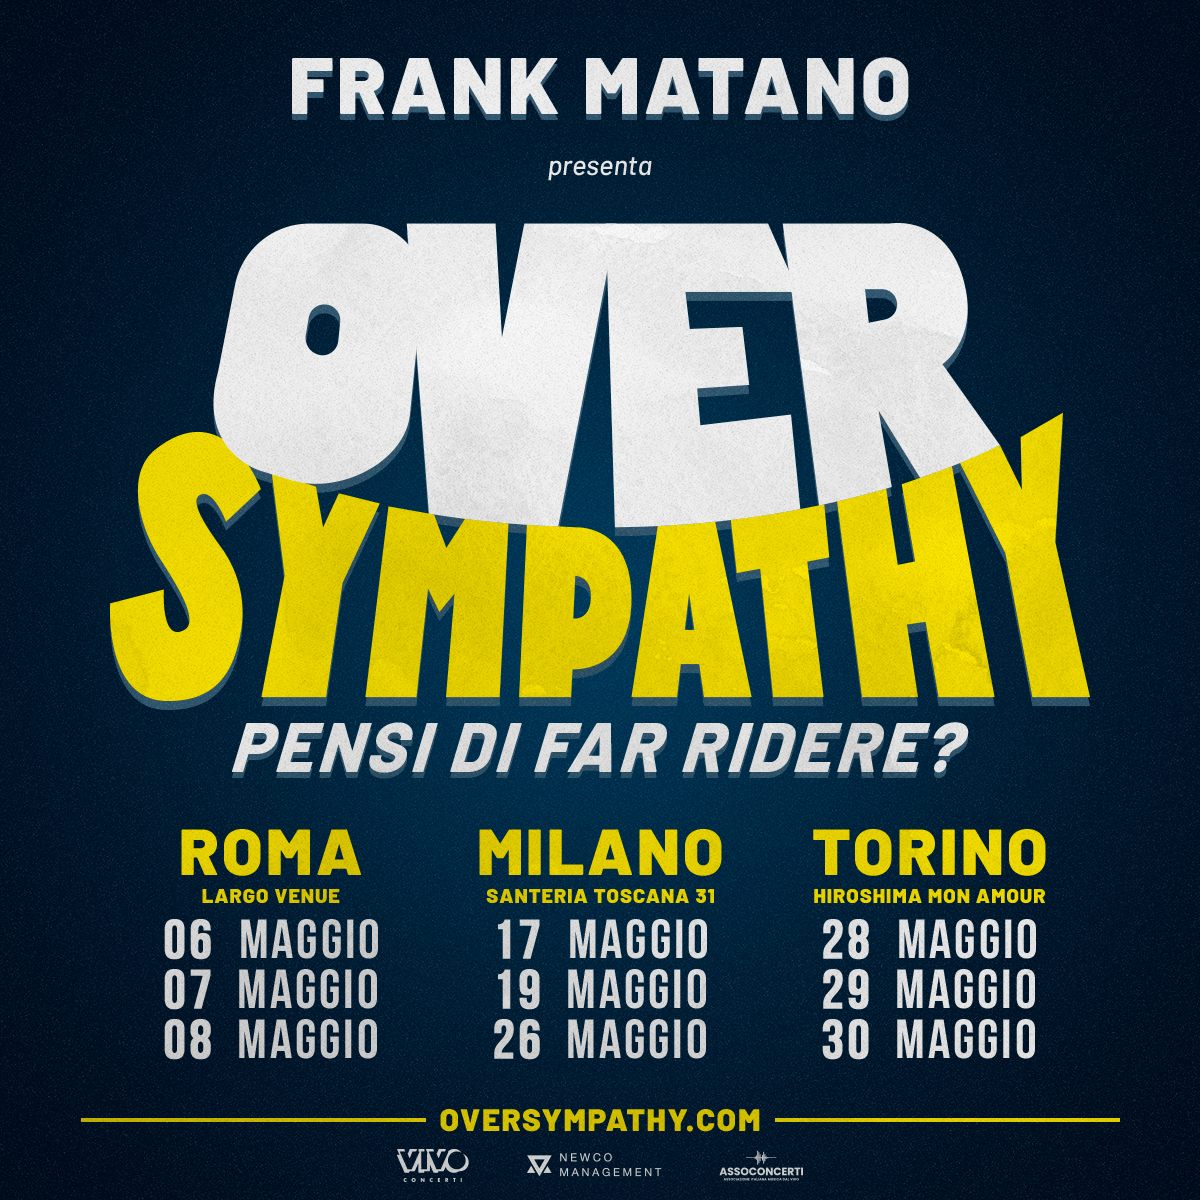 Frank Matano presenta "OVER SYMPATHY Pensi di far ridere?" YOUparti